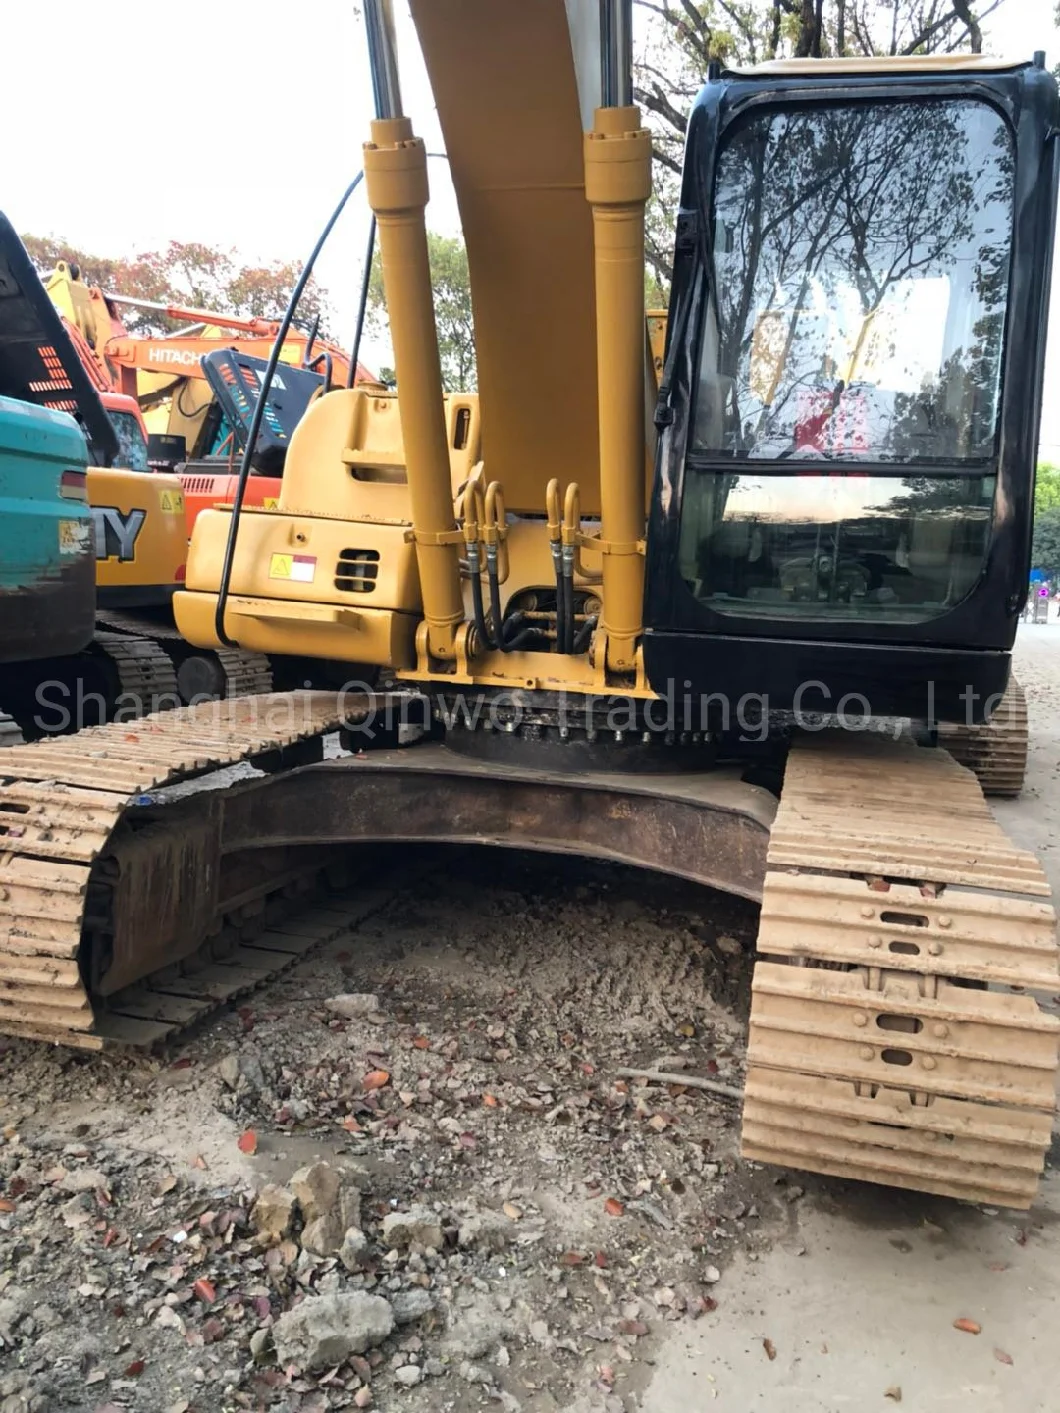 Used Cat 320c Excavator Caterpillar 320c Construction Machine Hydraulic Cralwer Mining Excavator